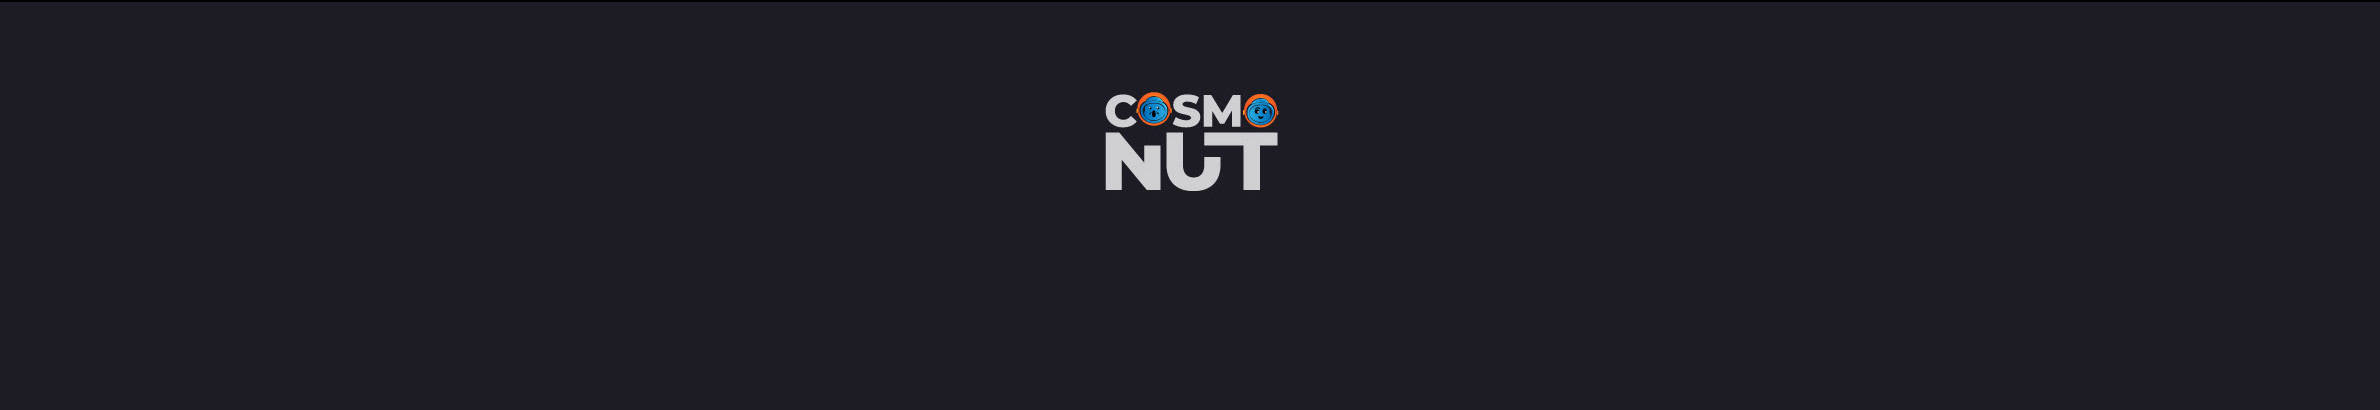 EtoZhe Cosmonut's profile banner